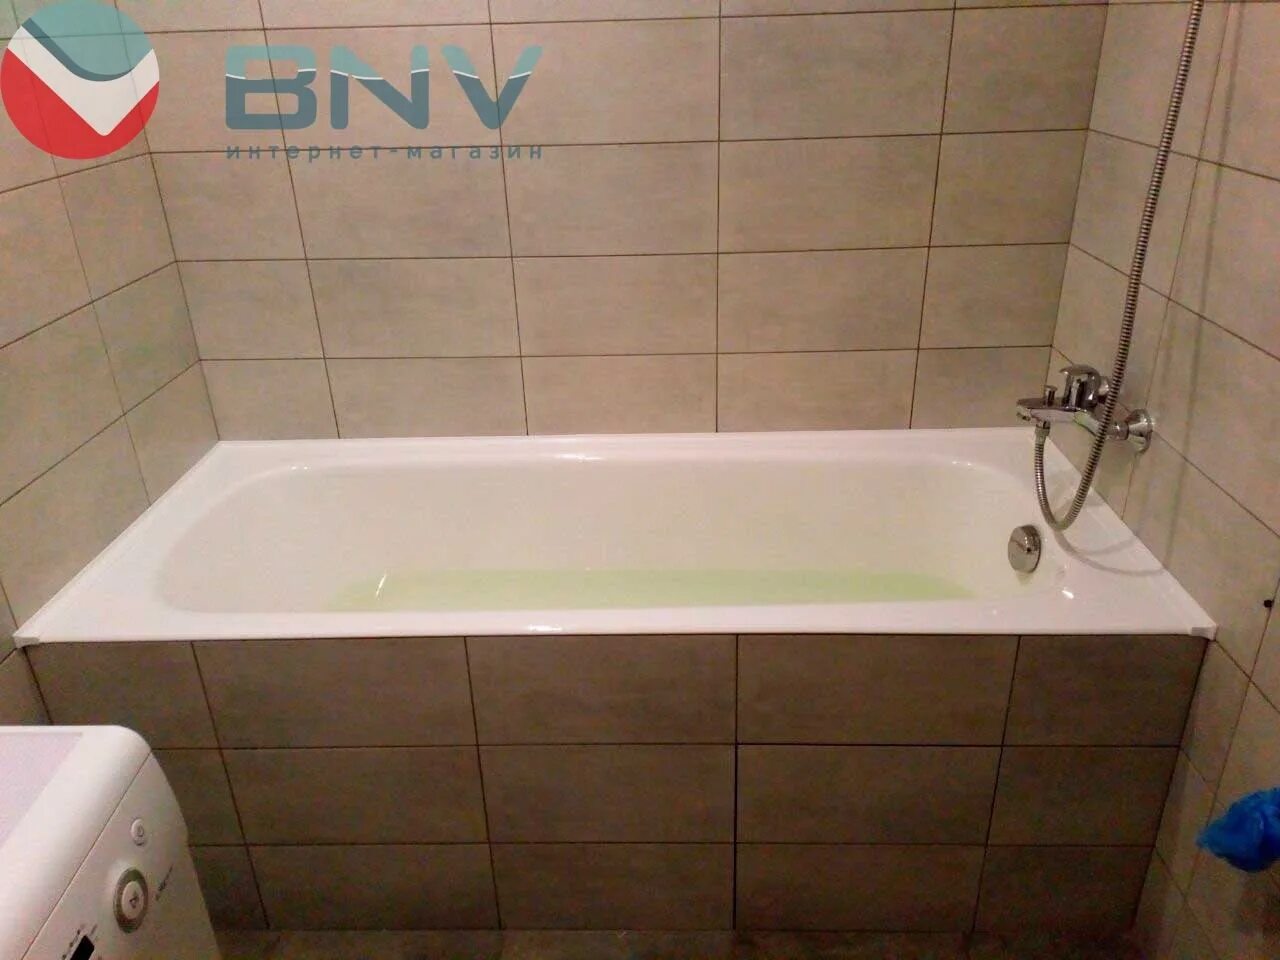 Бордюры для ванной bnv. Плинтус бордюр для ванной BNV. Примыкание ванны к плитке. Прилегание плитки к ванной. Плинтус на ванную акриловый.